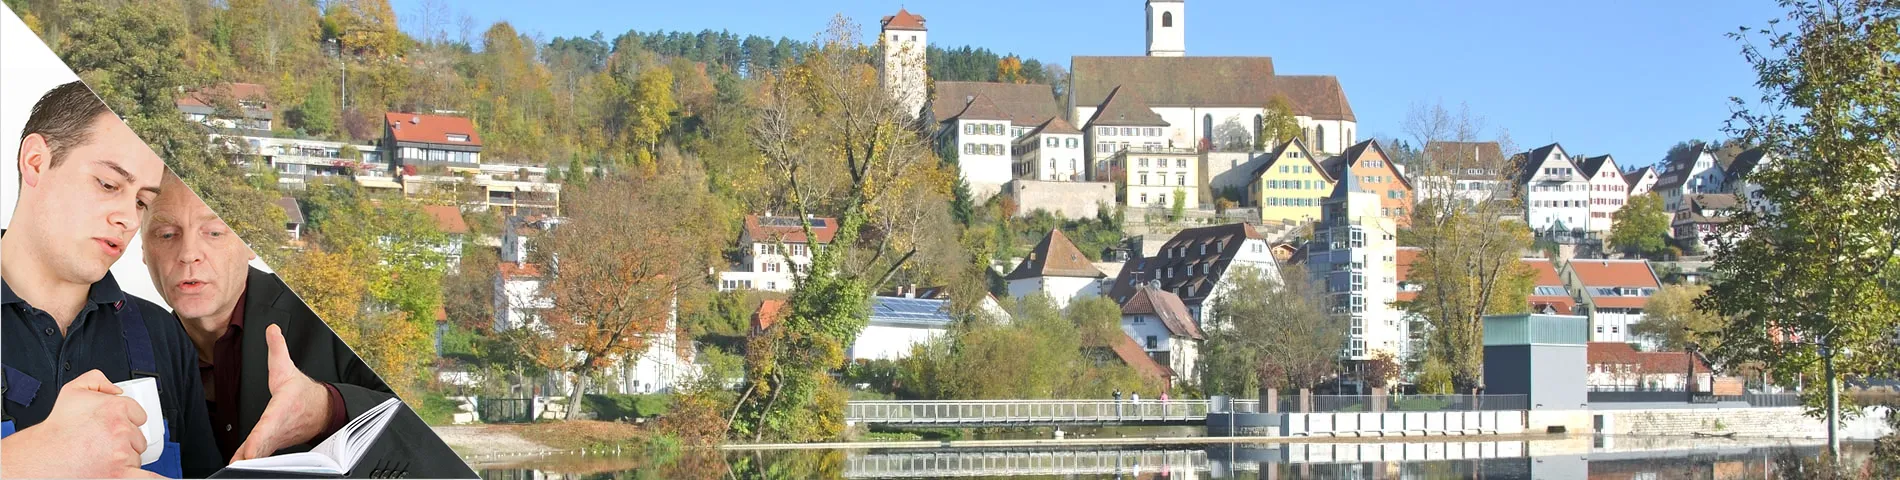 Horb am Neckar - Bire_Bir